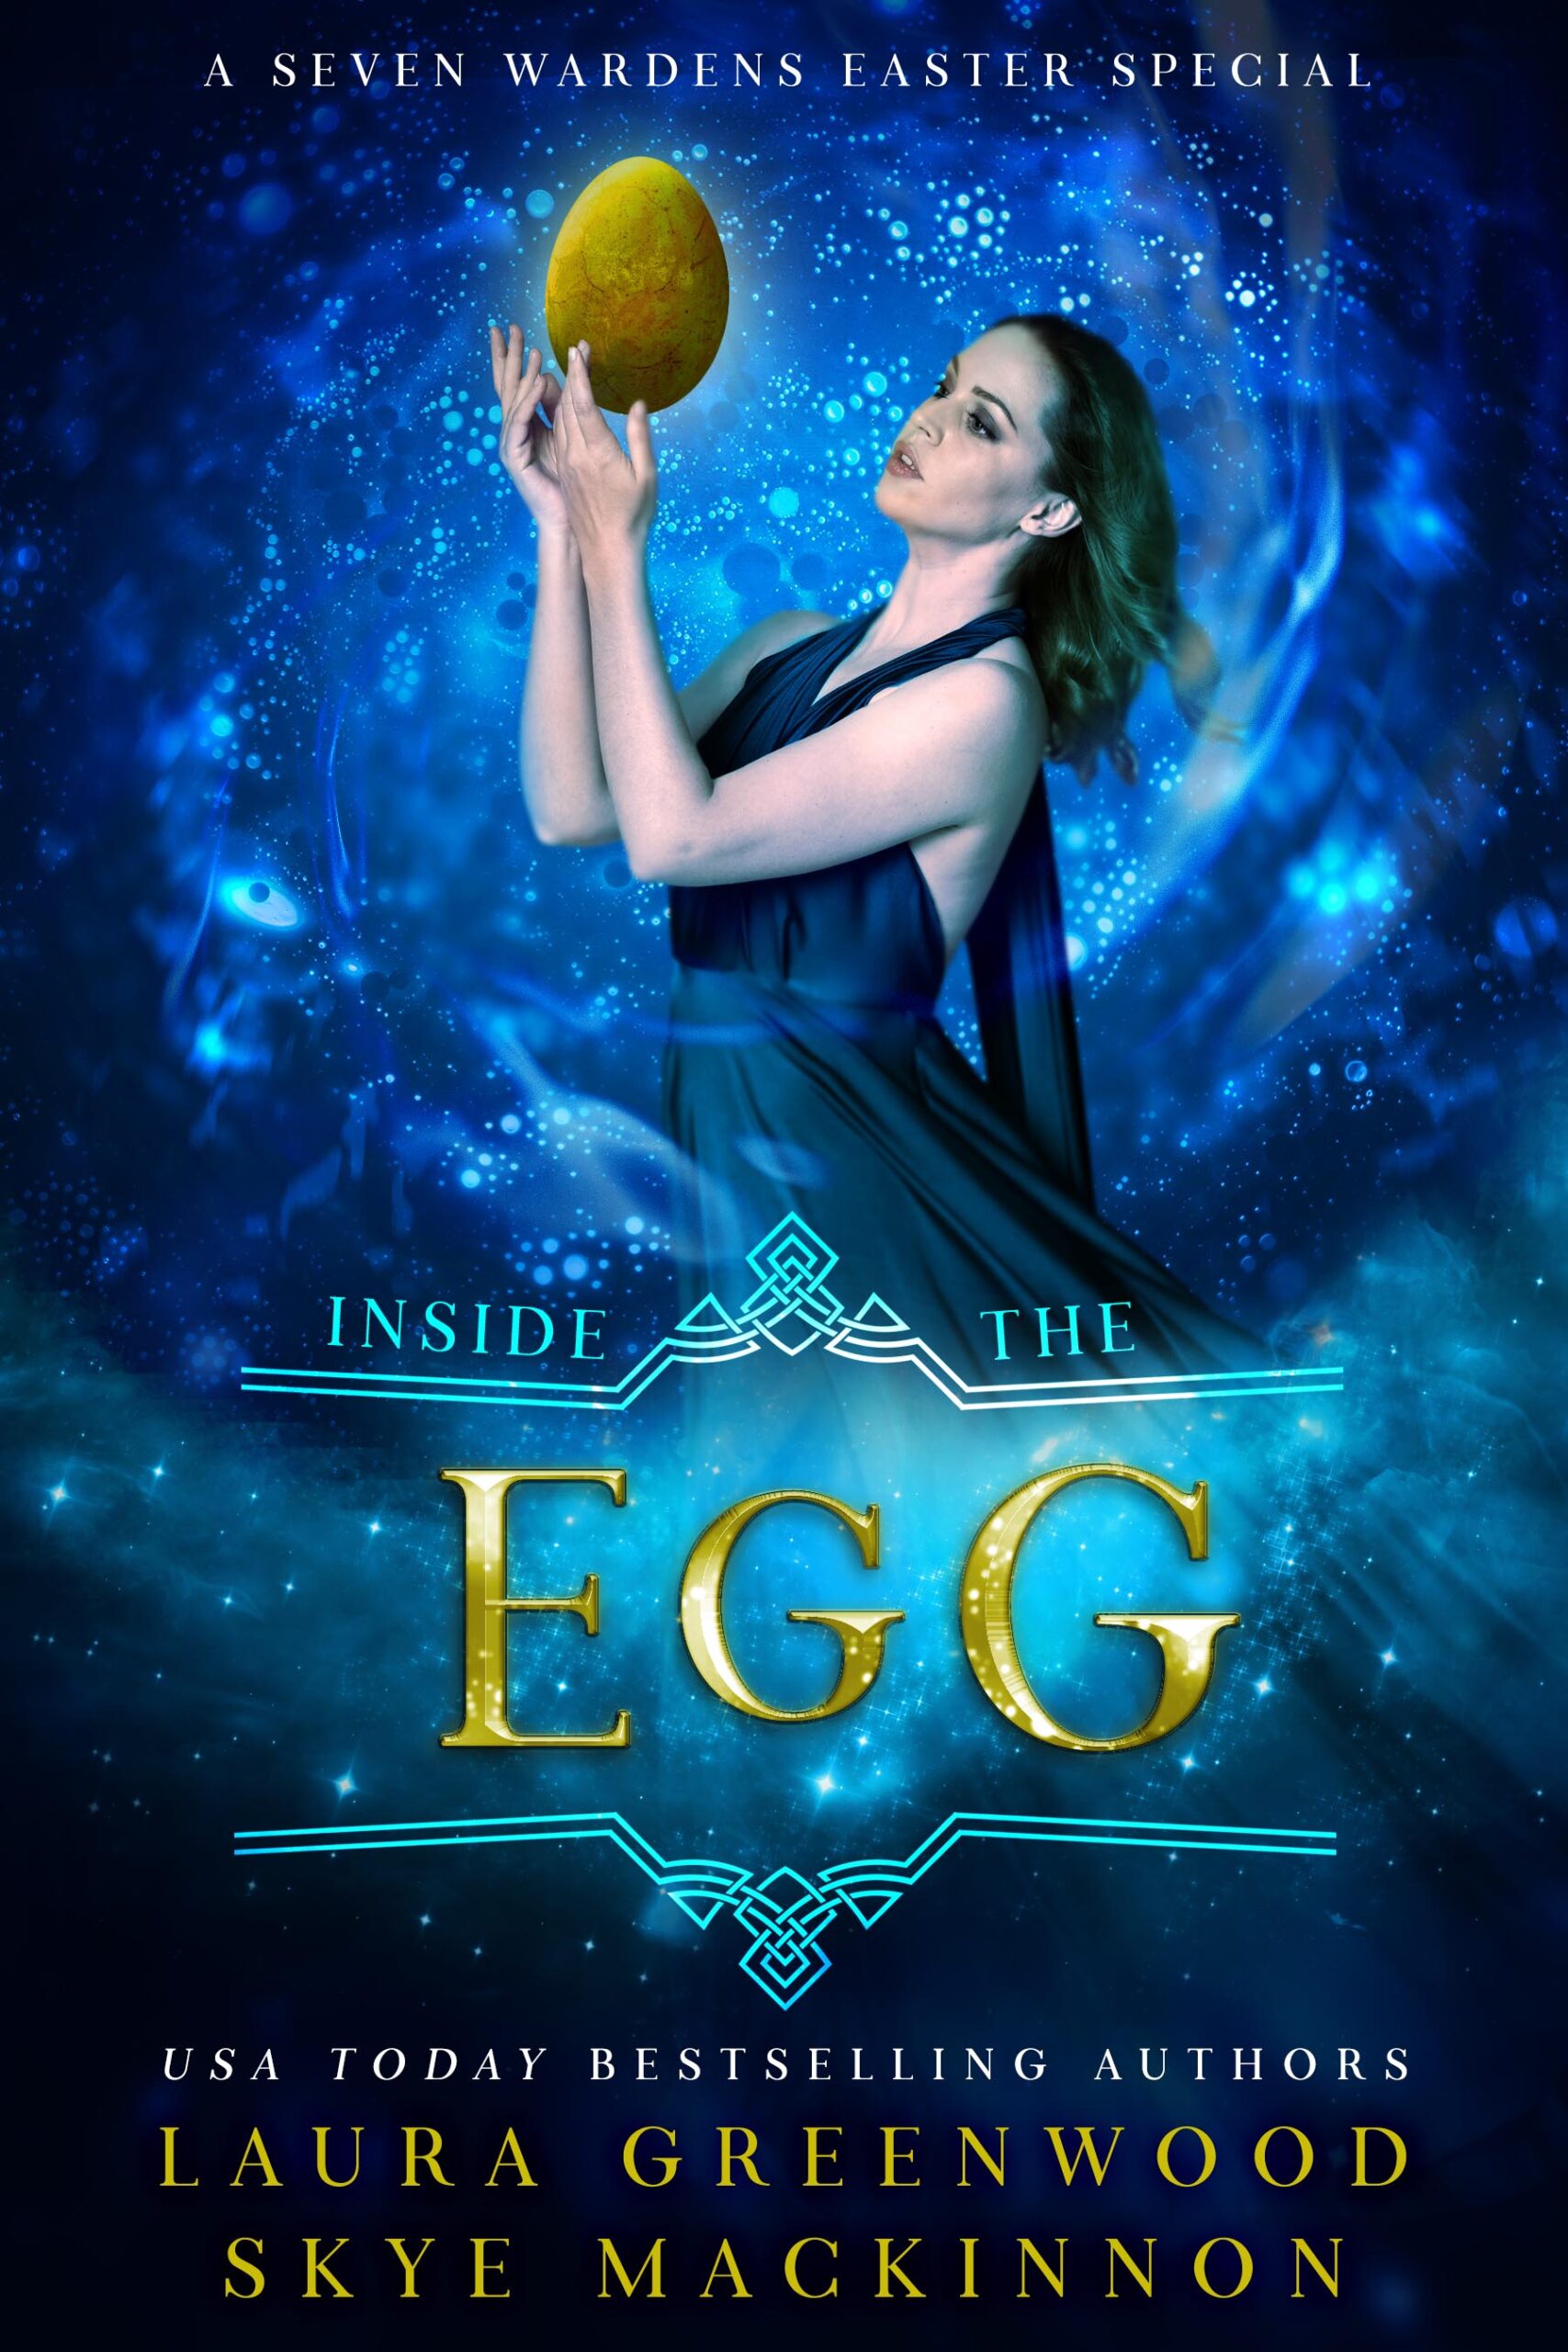 Inside the Egg